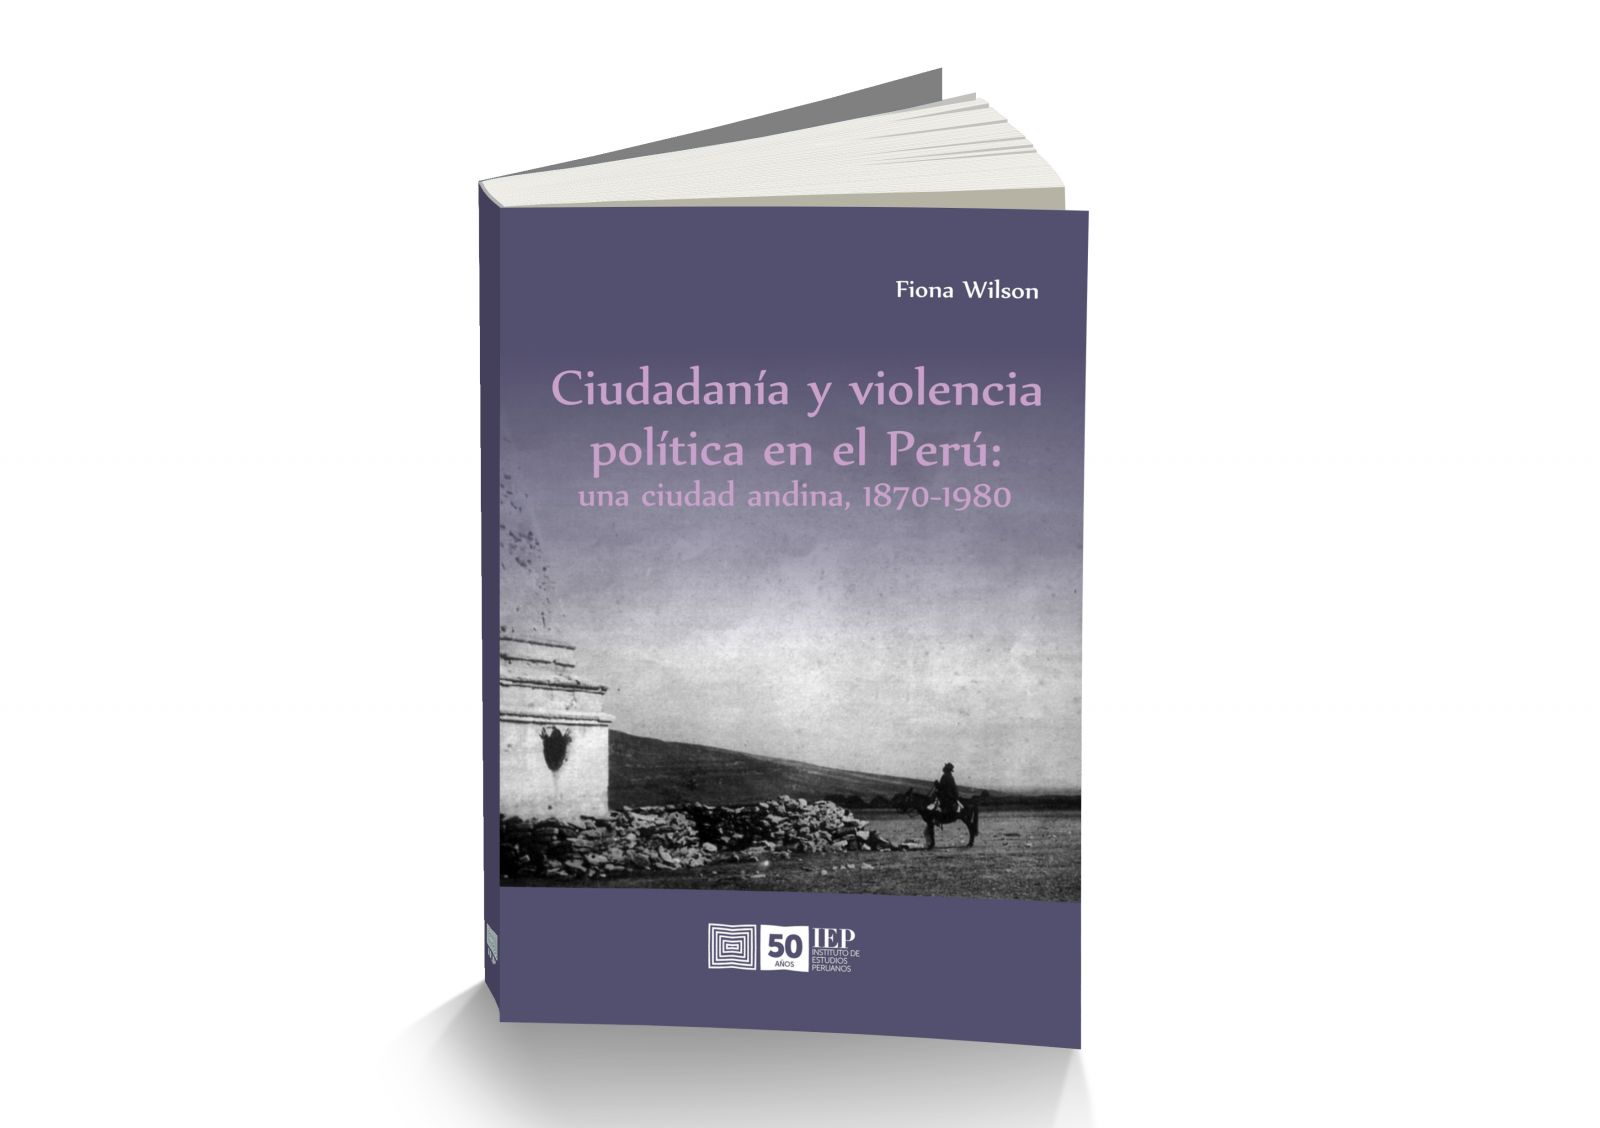 Presentación de libro “Ciudadanía y violencia política en el Perú: una ciudad andina, 1870-1980”, de Fiona Wilson